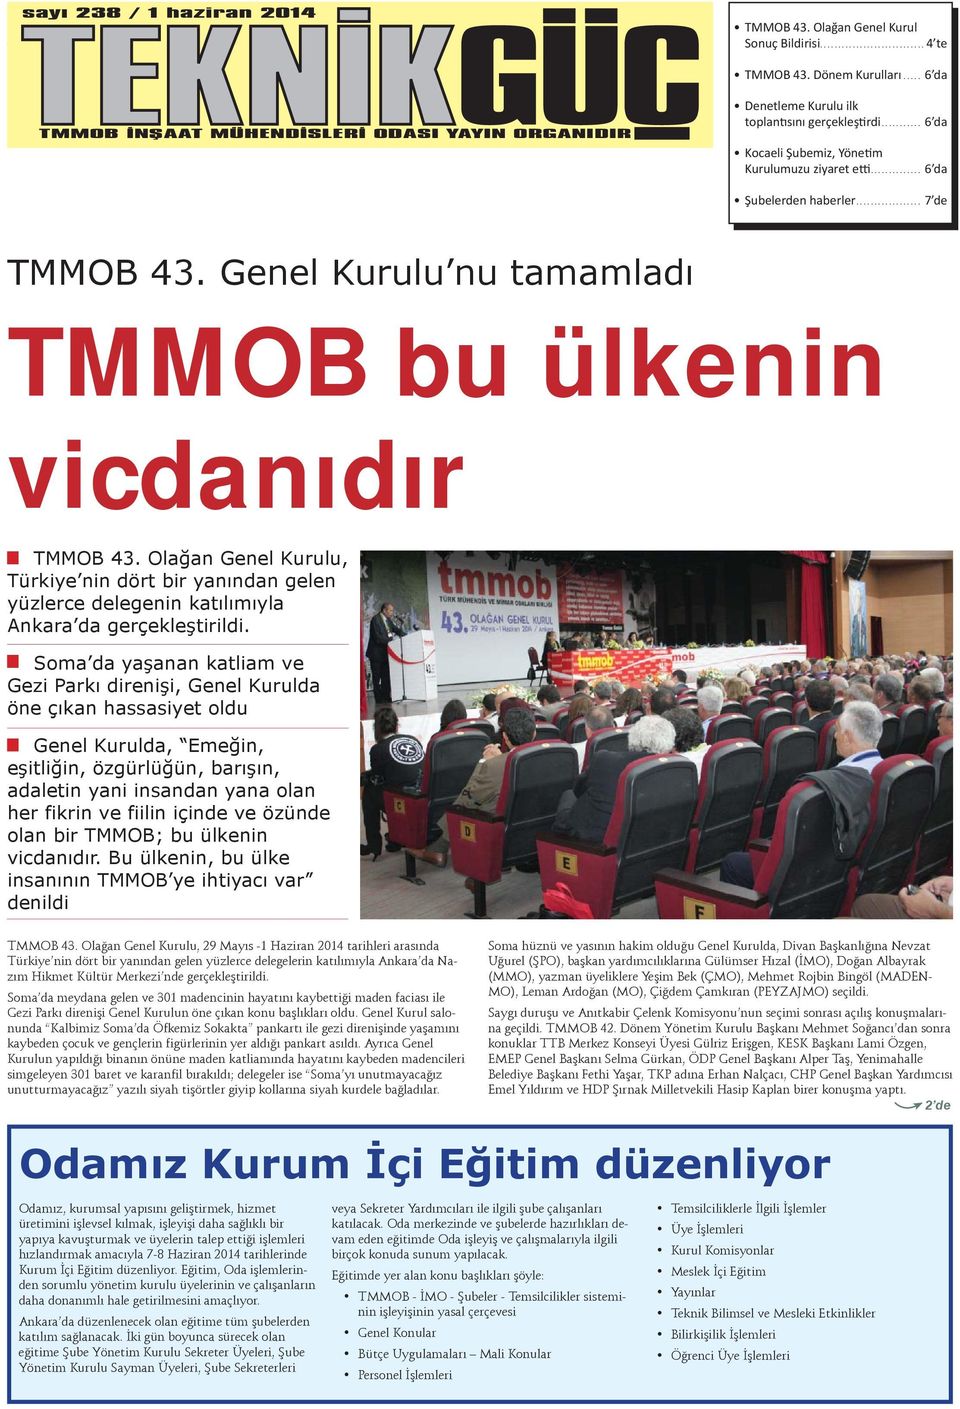 Genel Kurulu nu tamamladı TMMOB bu ülkenin vicdanıdır TMMOB 43. Olağan Genel Kurulu, Türkiye nin dört bir yanından gelen yüzlerce delegenin katılımıyla Ankara da gerçekleştirildi.